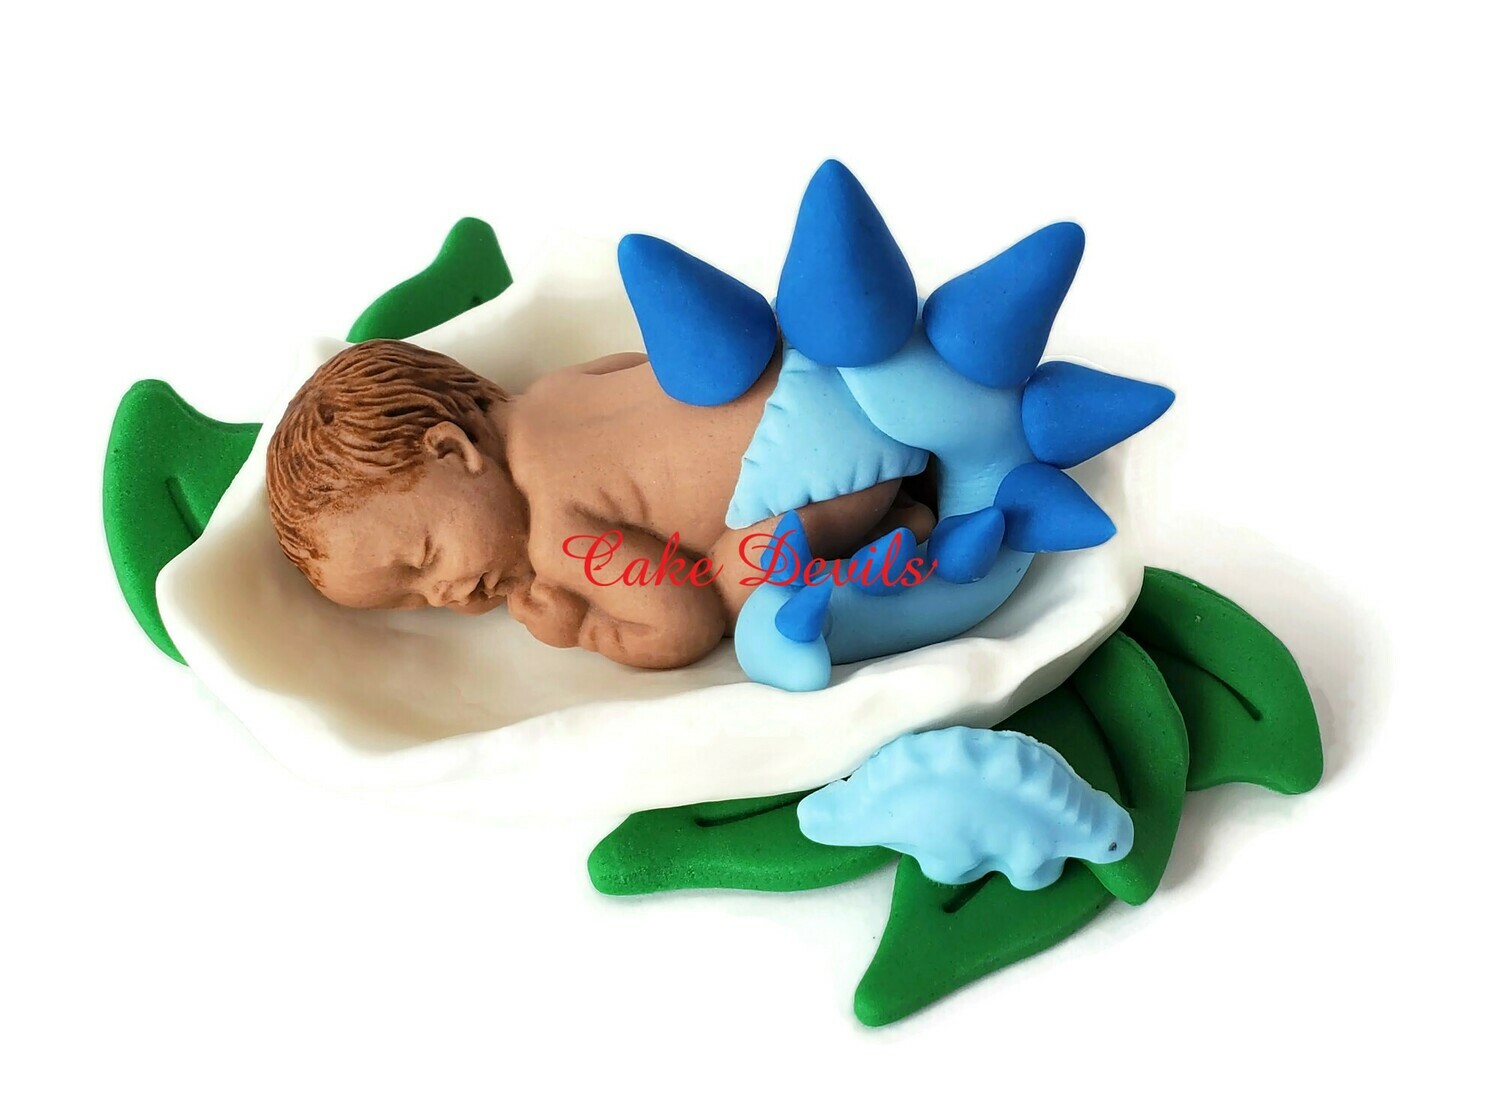 Dinosaur Baby Sleeping in Eggshell Baby Shower Fondant Cake Topper